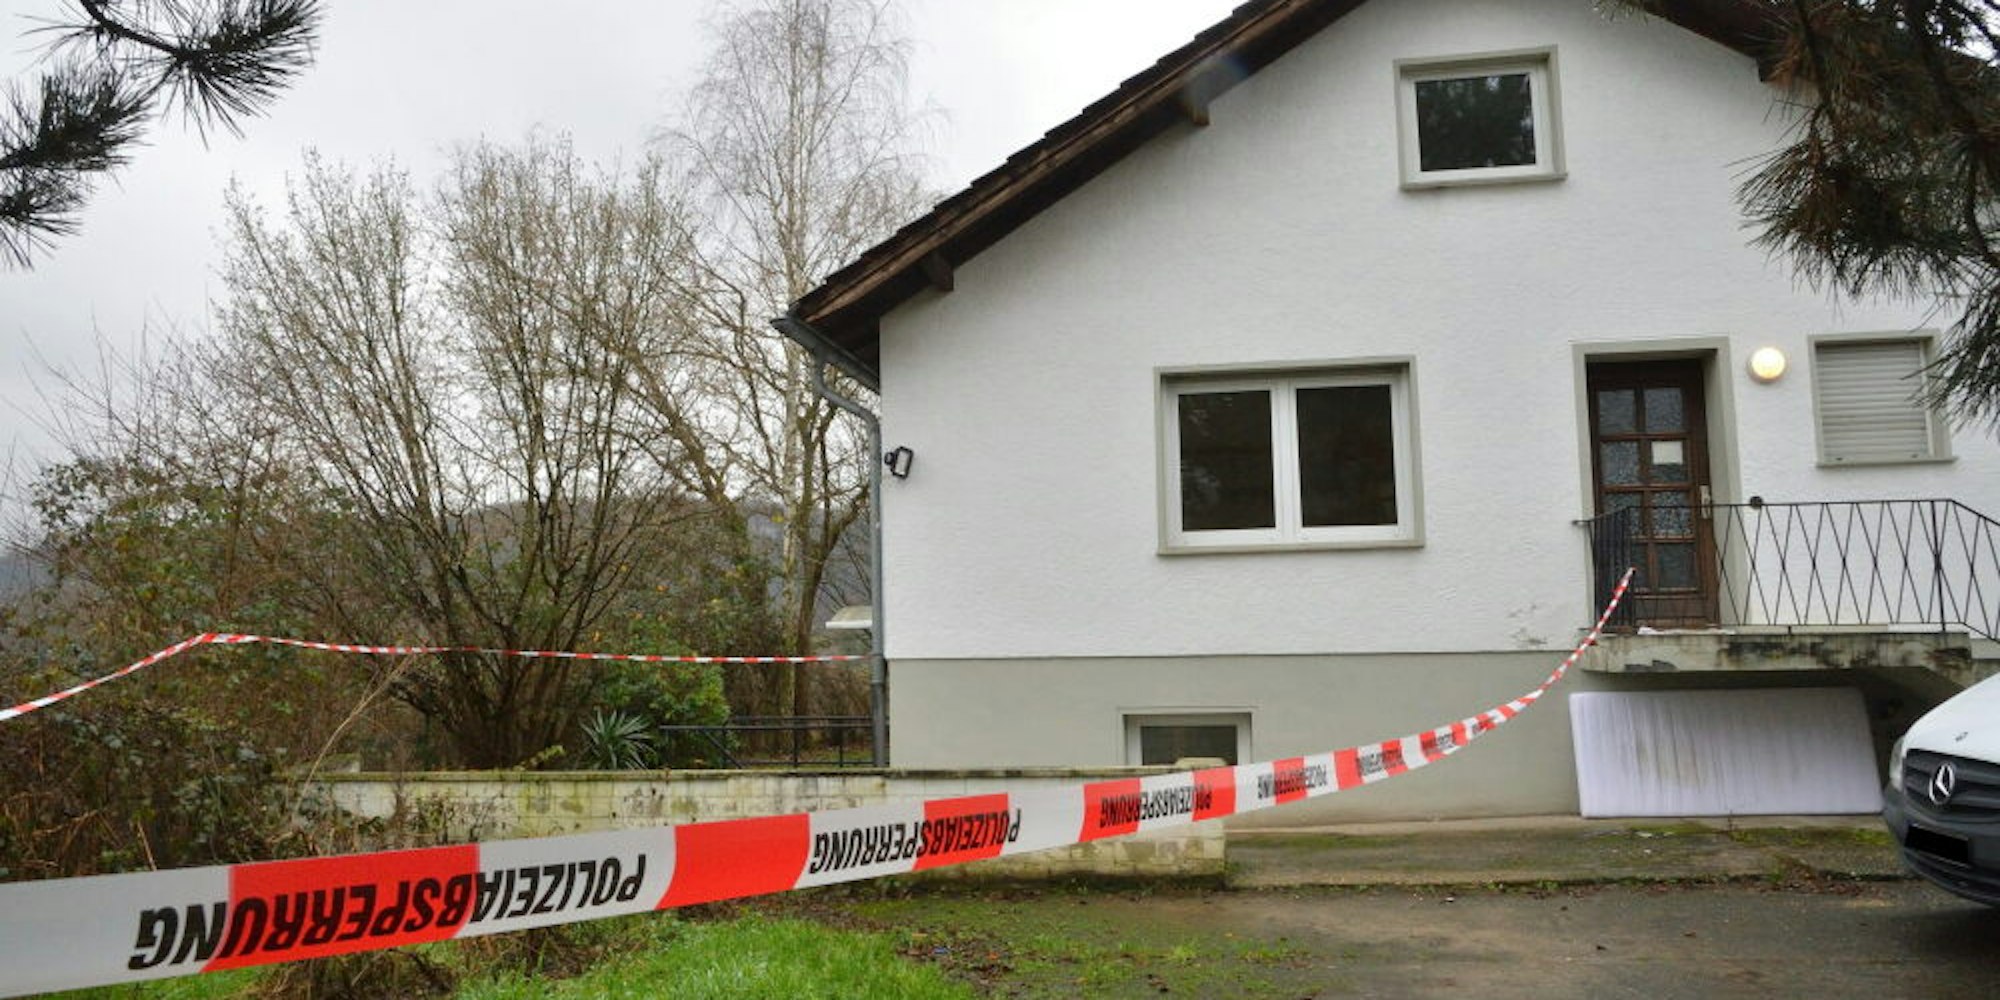 Im Keller dieses Hauses am Rande von Rösrath soll ein 19-jähriger Wohngruppenbewohner versucht haben, eine 22-jährige Betreuerin zu töten. Der Mann wurde vorläufig festgenommen.